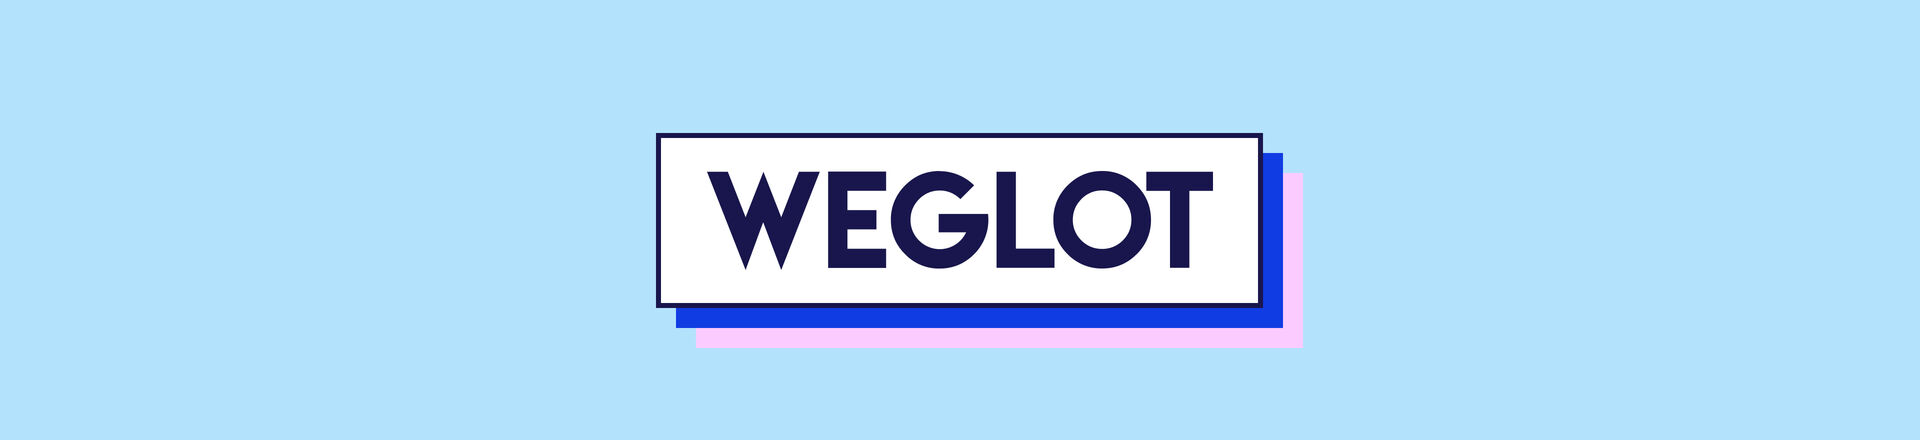 Bannière d'illustration pour l'article "WEGLOT" de l'agence marketing WNG